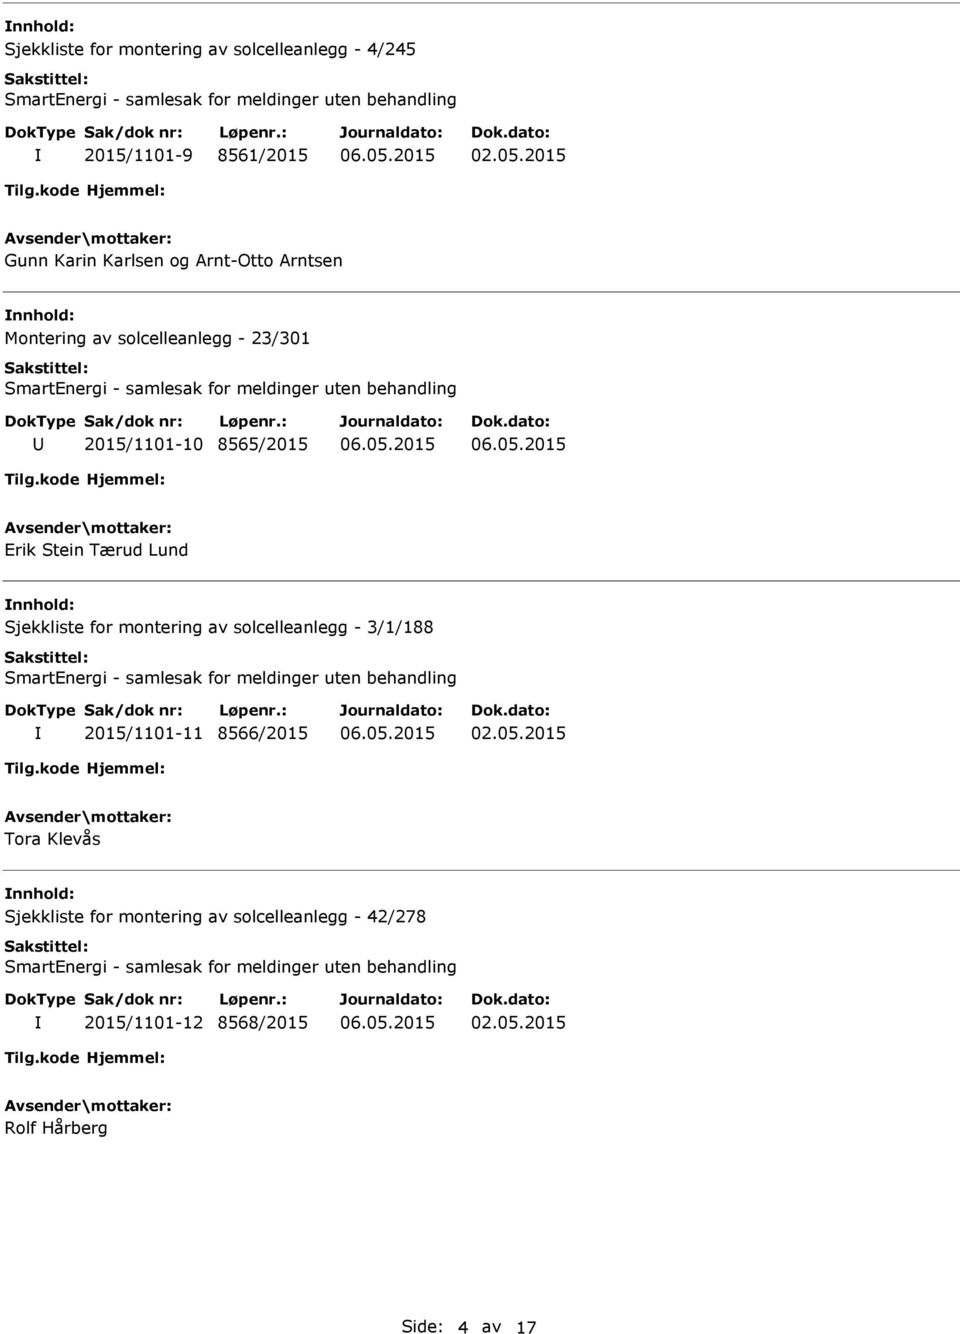 Lund Sjekkliste for montering av solcelleanlegg - 3/1/188 2015/1101-11 8566/2015 Tora Klevås